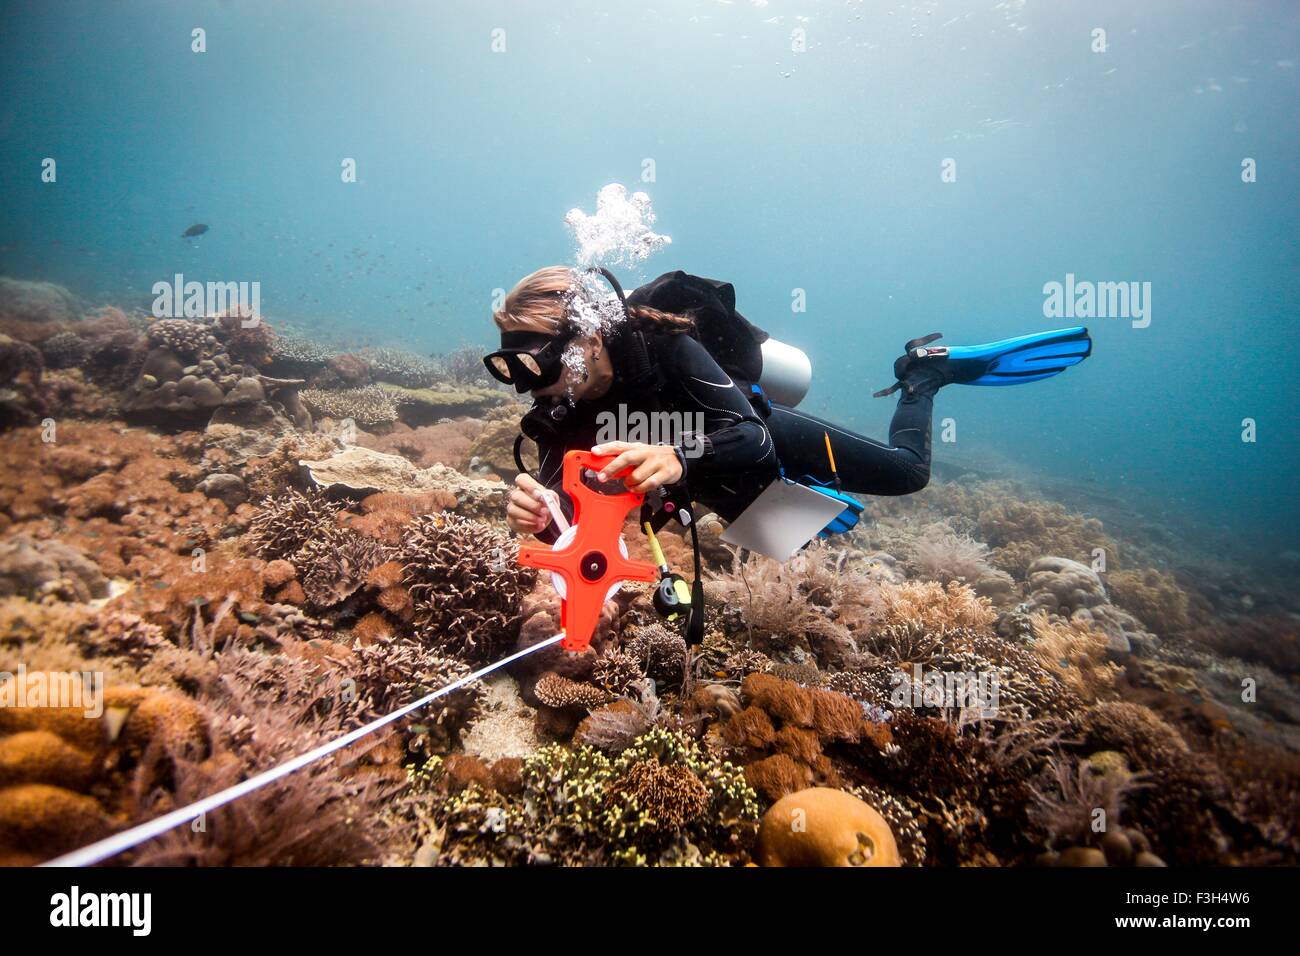 Weibliche Taucher führt eine wissenschaftliche Umfrage an einem Korallenriff, Raja Ampat, West-Papua, Indonesien Stockfoto